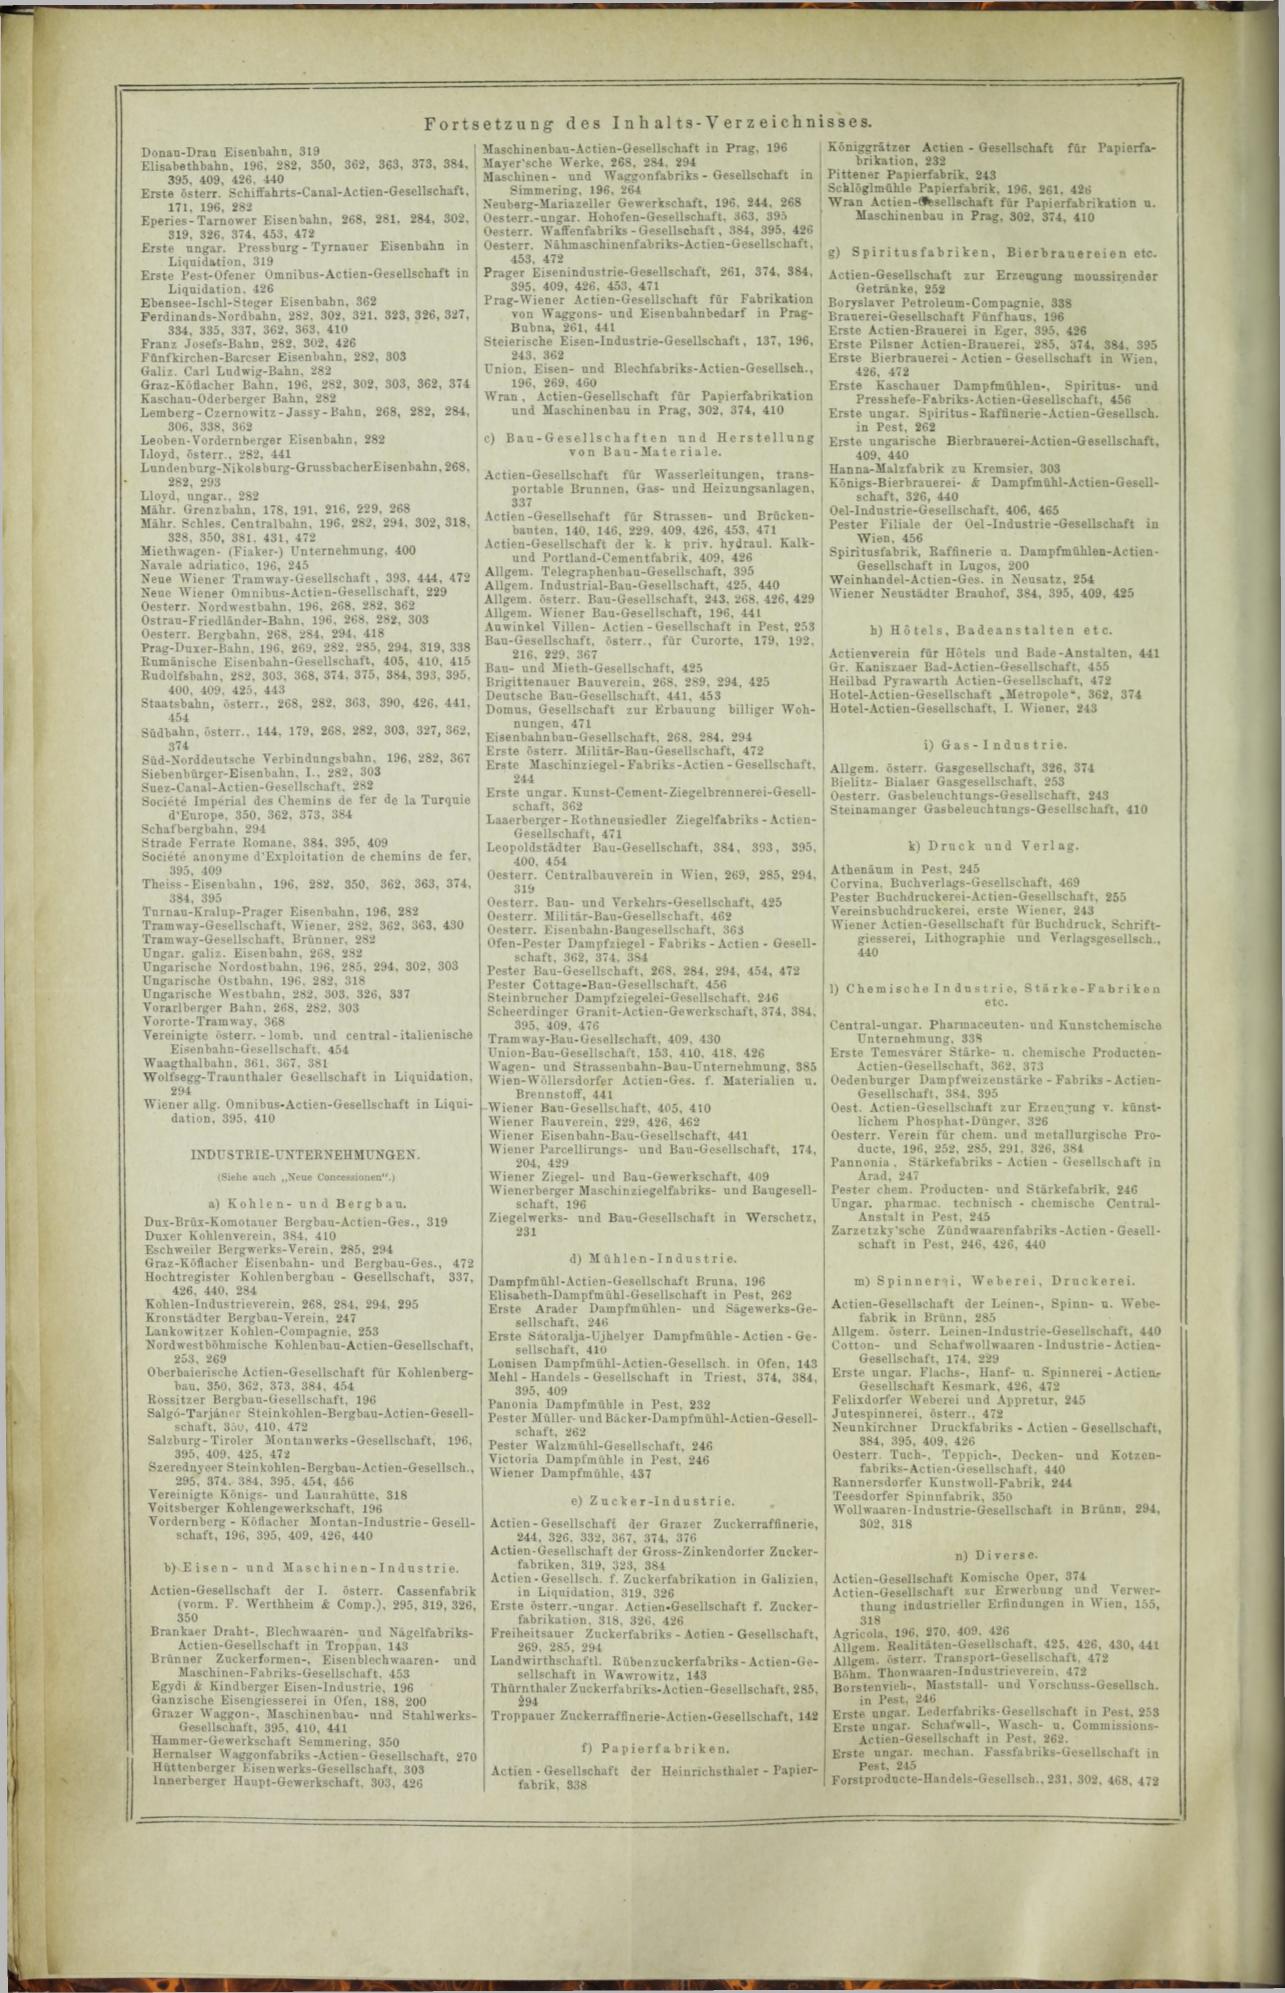 Der Tresor 02.10.1872 - Seite 20